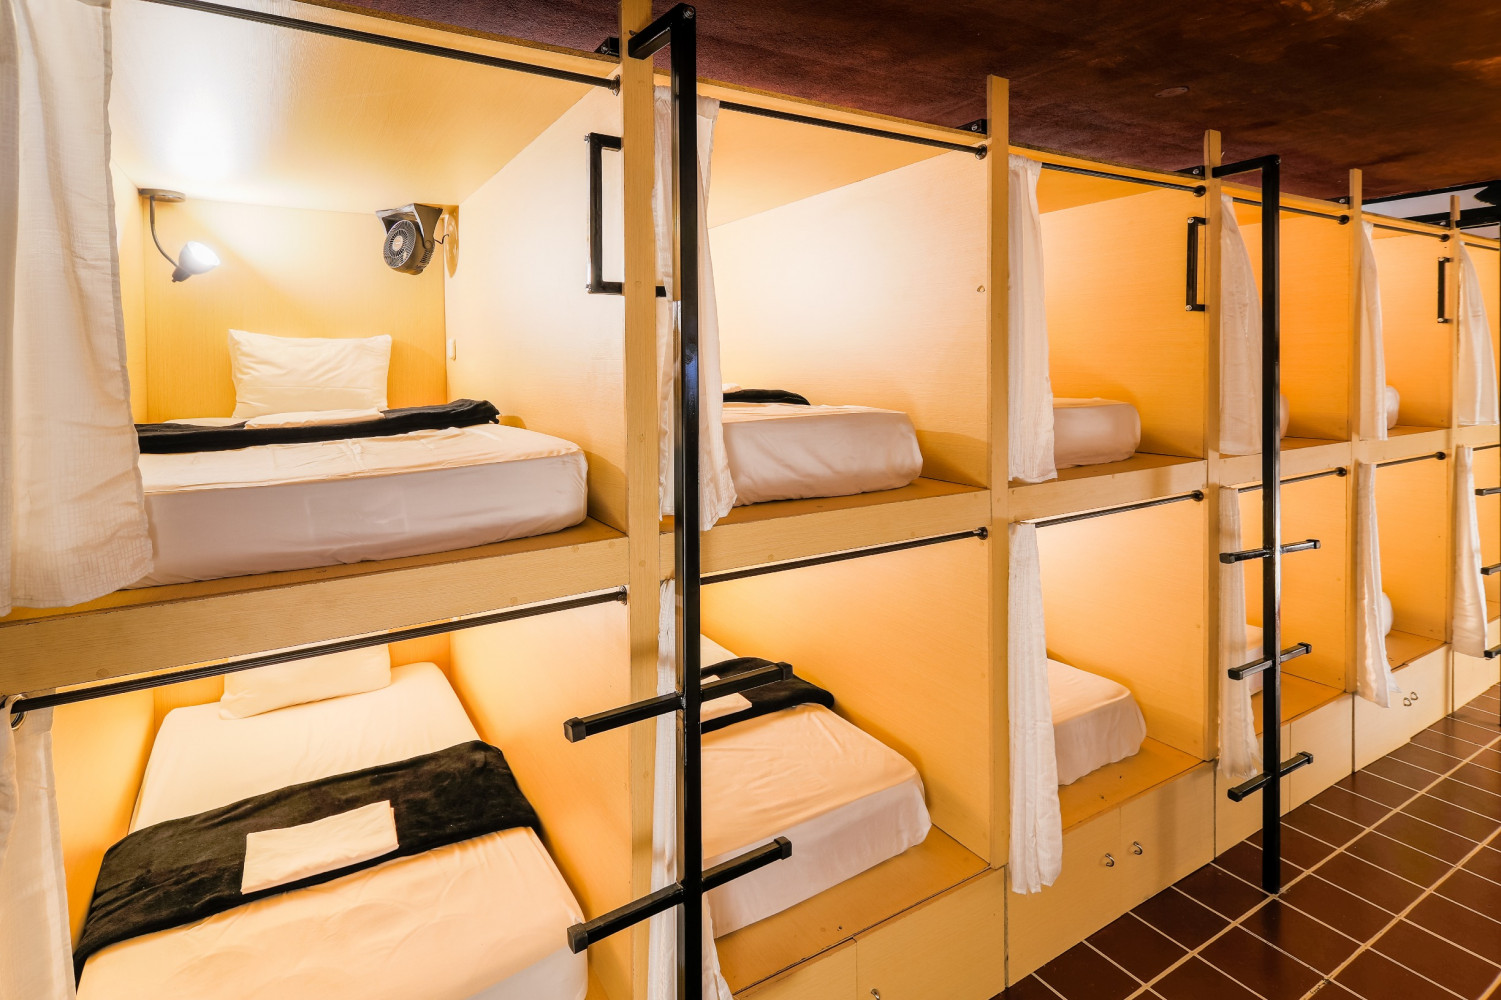 Отдых общежитие. Капсульный хостел. Капсульные кровати для хостела. Отель капсульного типа. Капсулы для хостела.